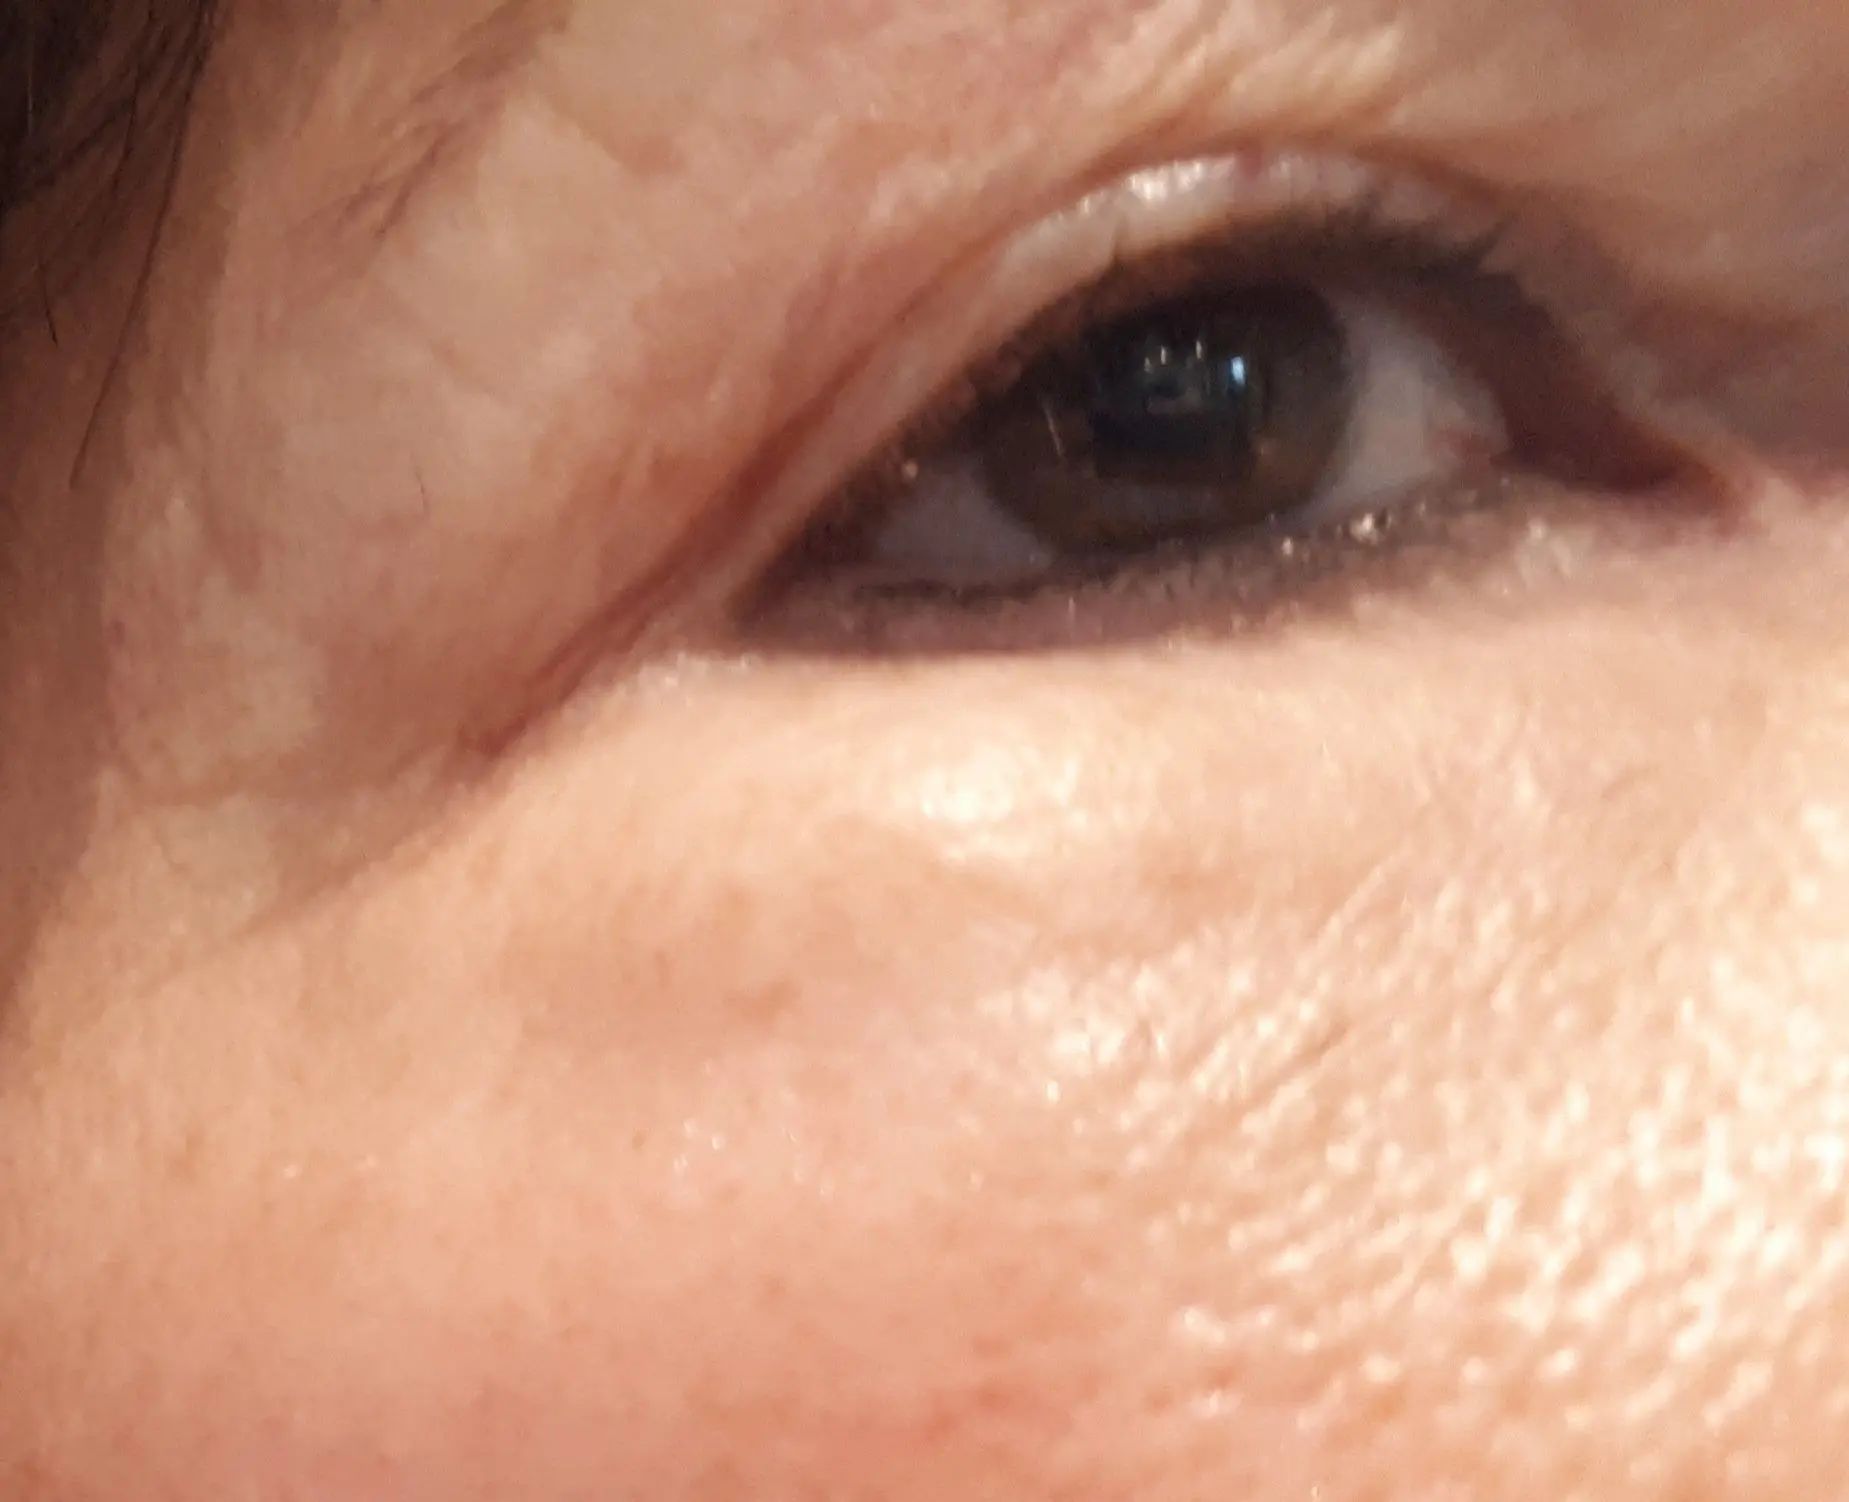 Augenringe Mit Eigenfett Unterspritzt Injizierbare Fullstoffe Dysport Restylane Botox Bio Alcamid Forum Estheticon De